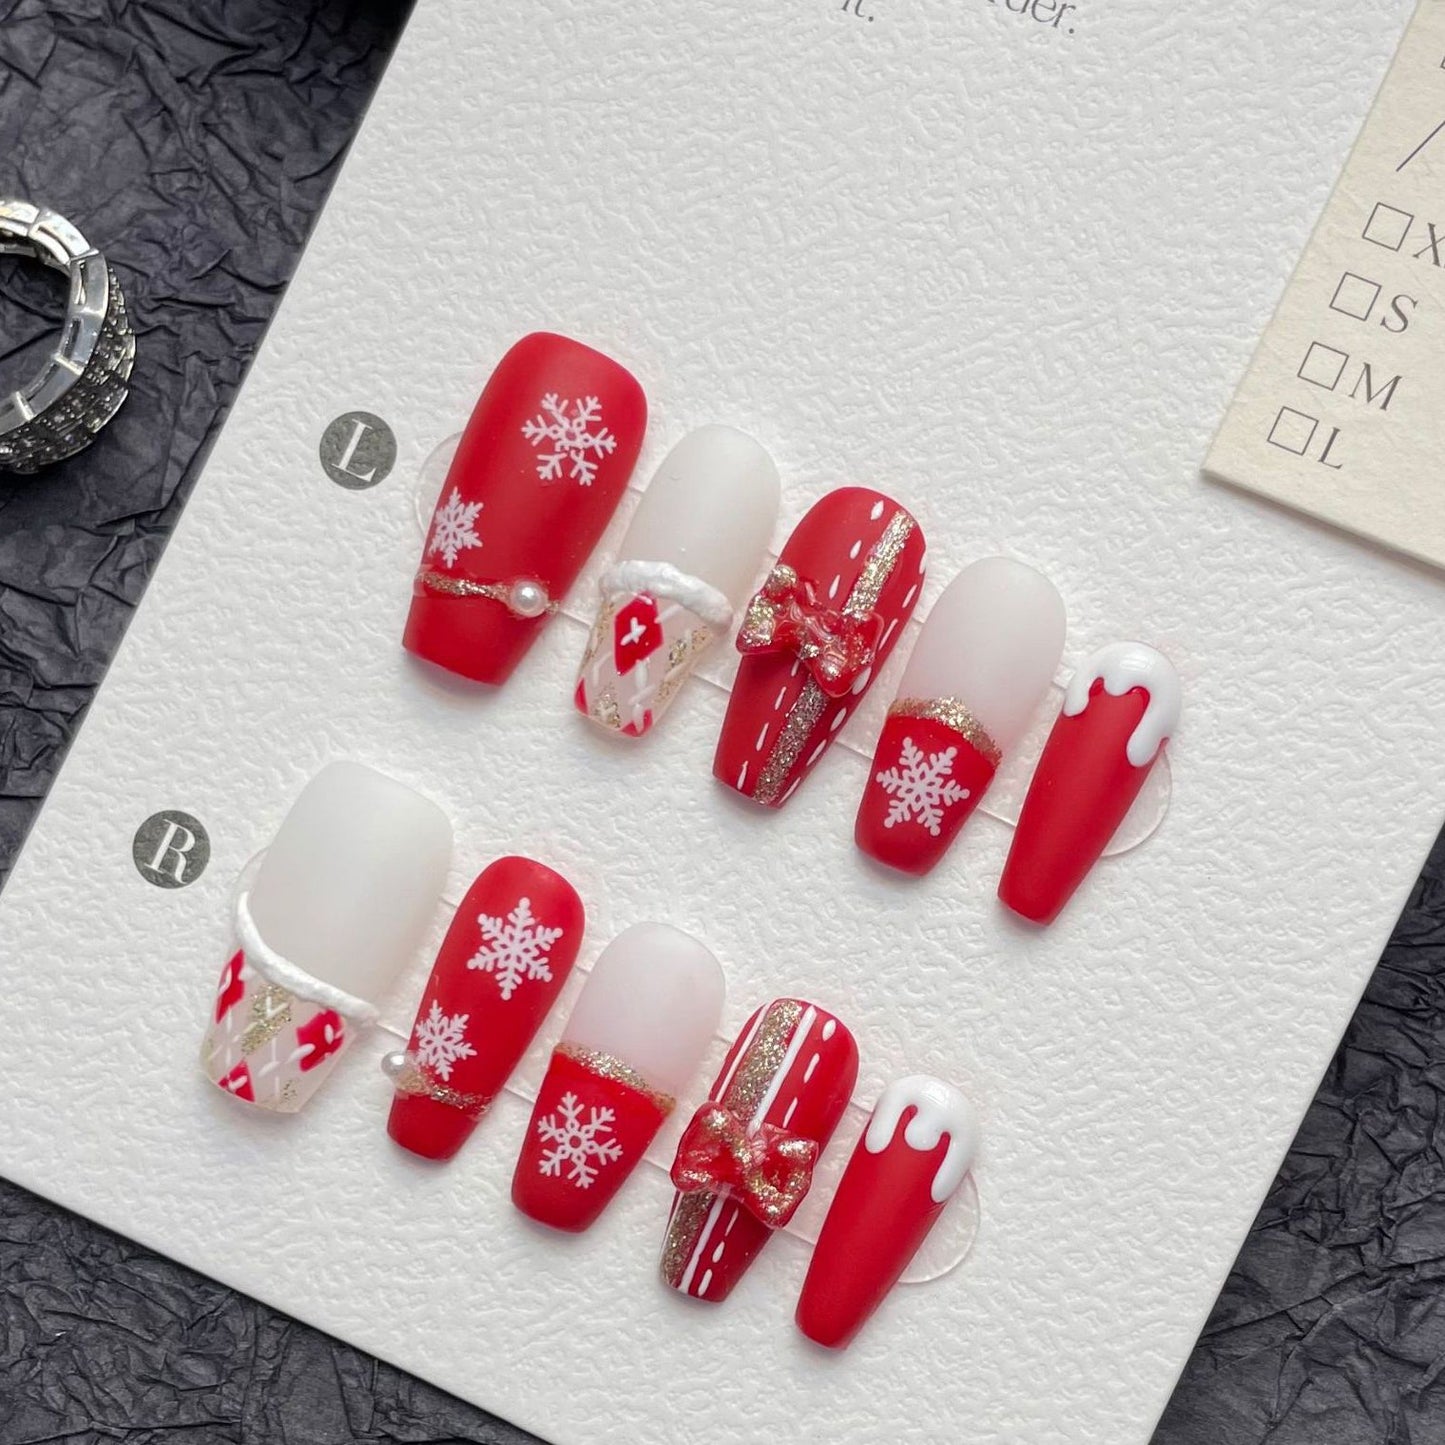 1272 Kerstsneeuwvlokken stijl pers op nagels 100% handgemaakte kunstnagels wit rood